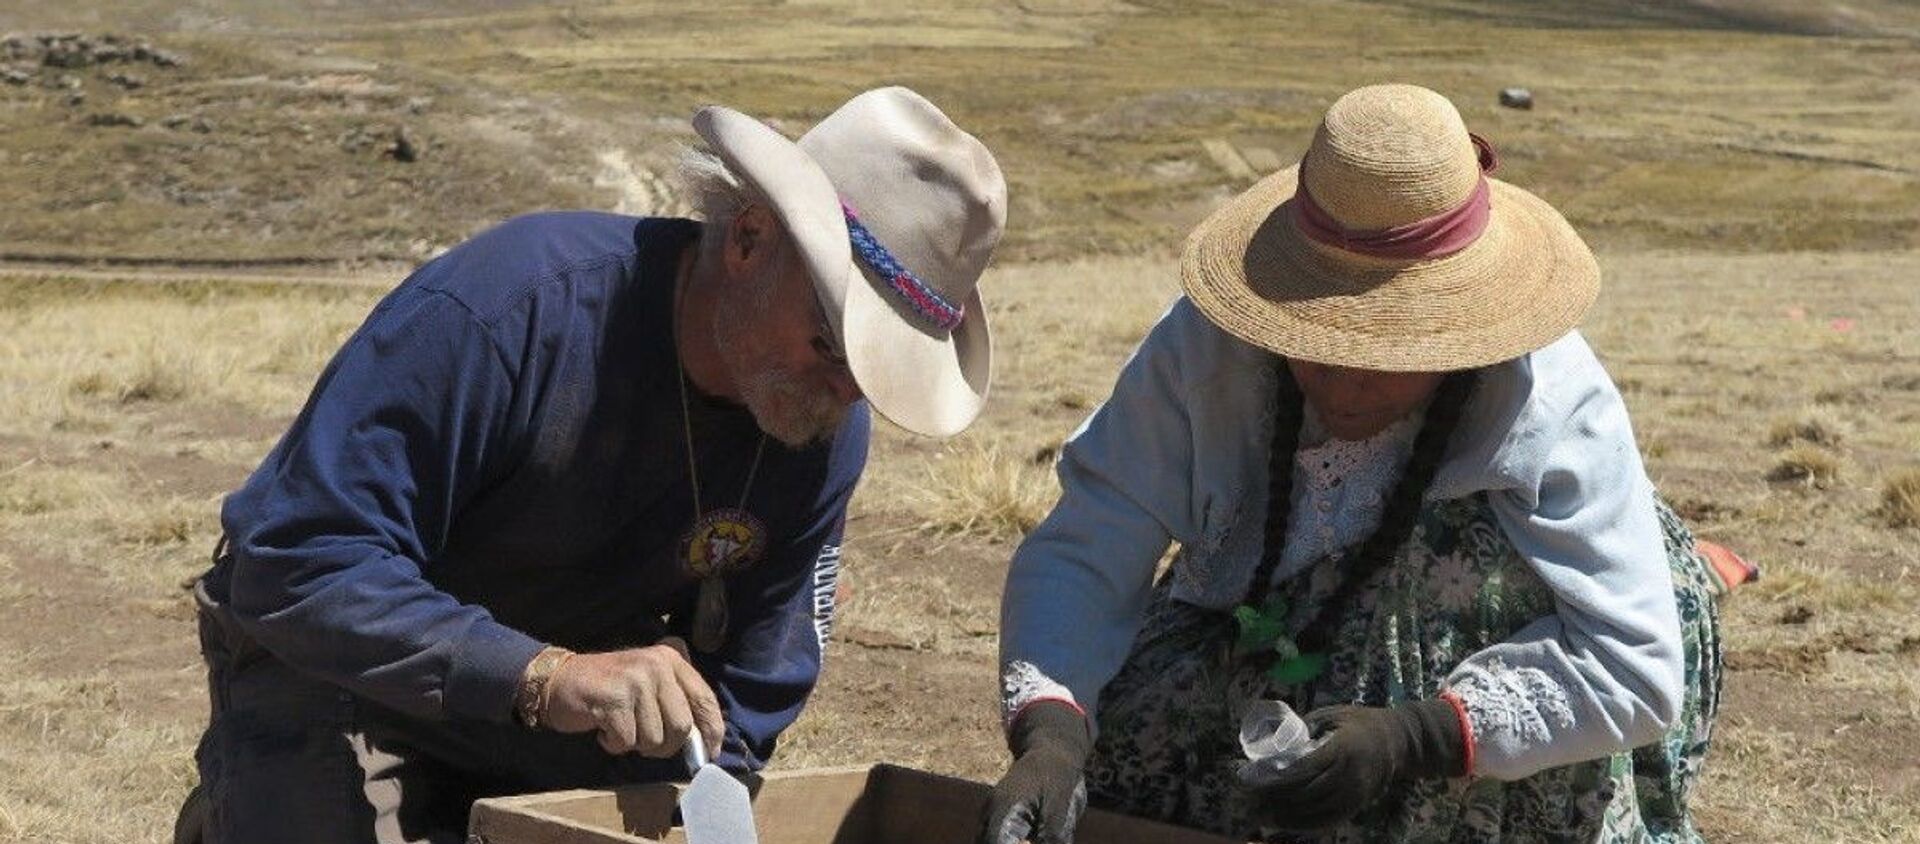 Arqueólogos en el Wilamaya Patjxa en Perú, donde se hallaron los restos de 9.000 años de una mujer cazadora - Sputnik Mundo, 1920, 12.11.2020